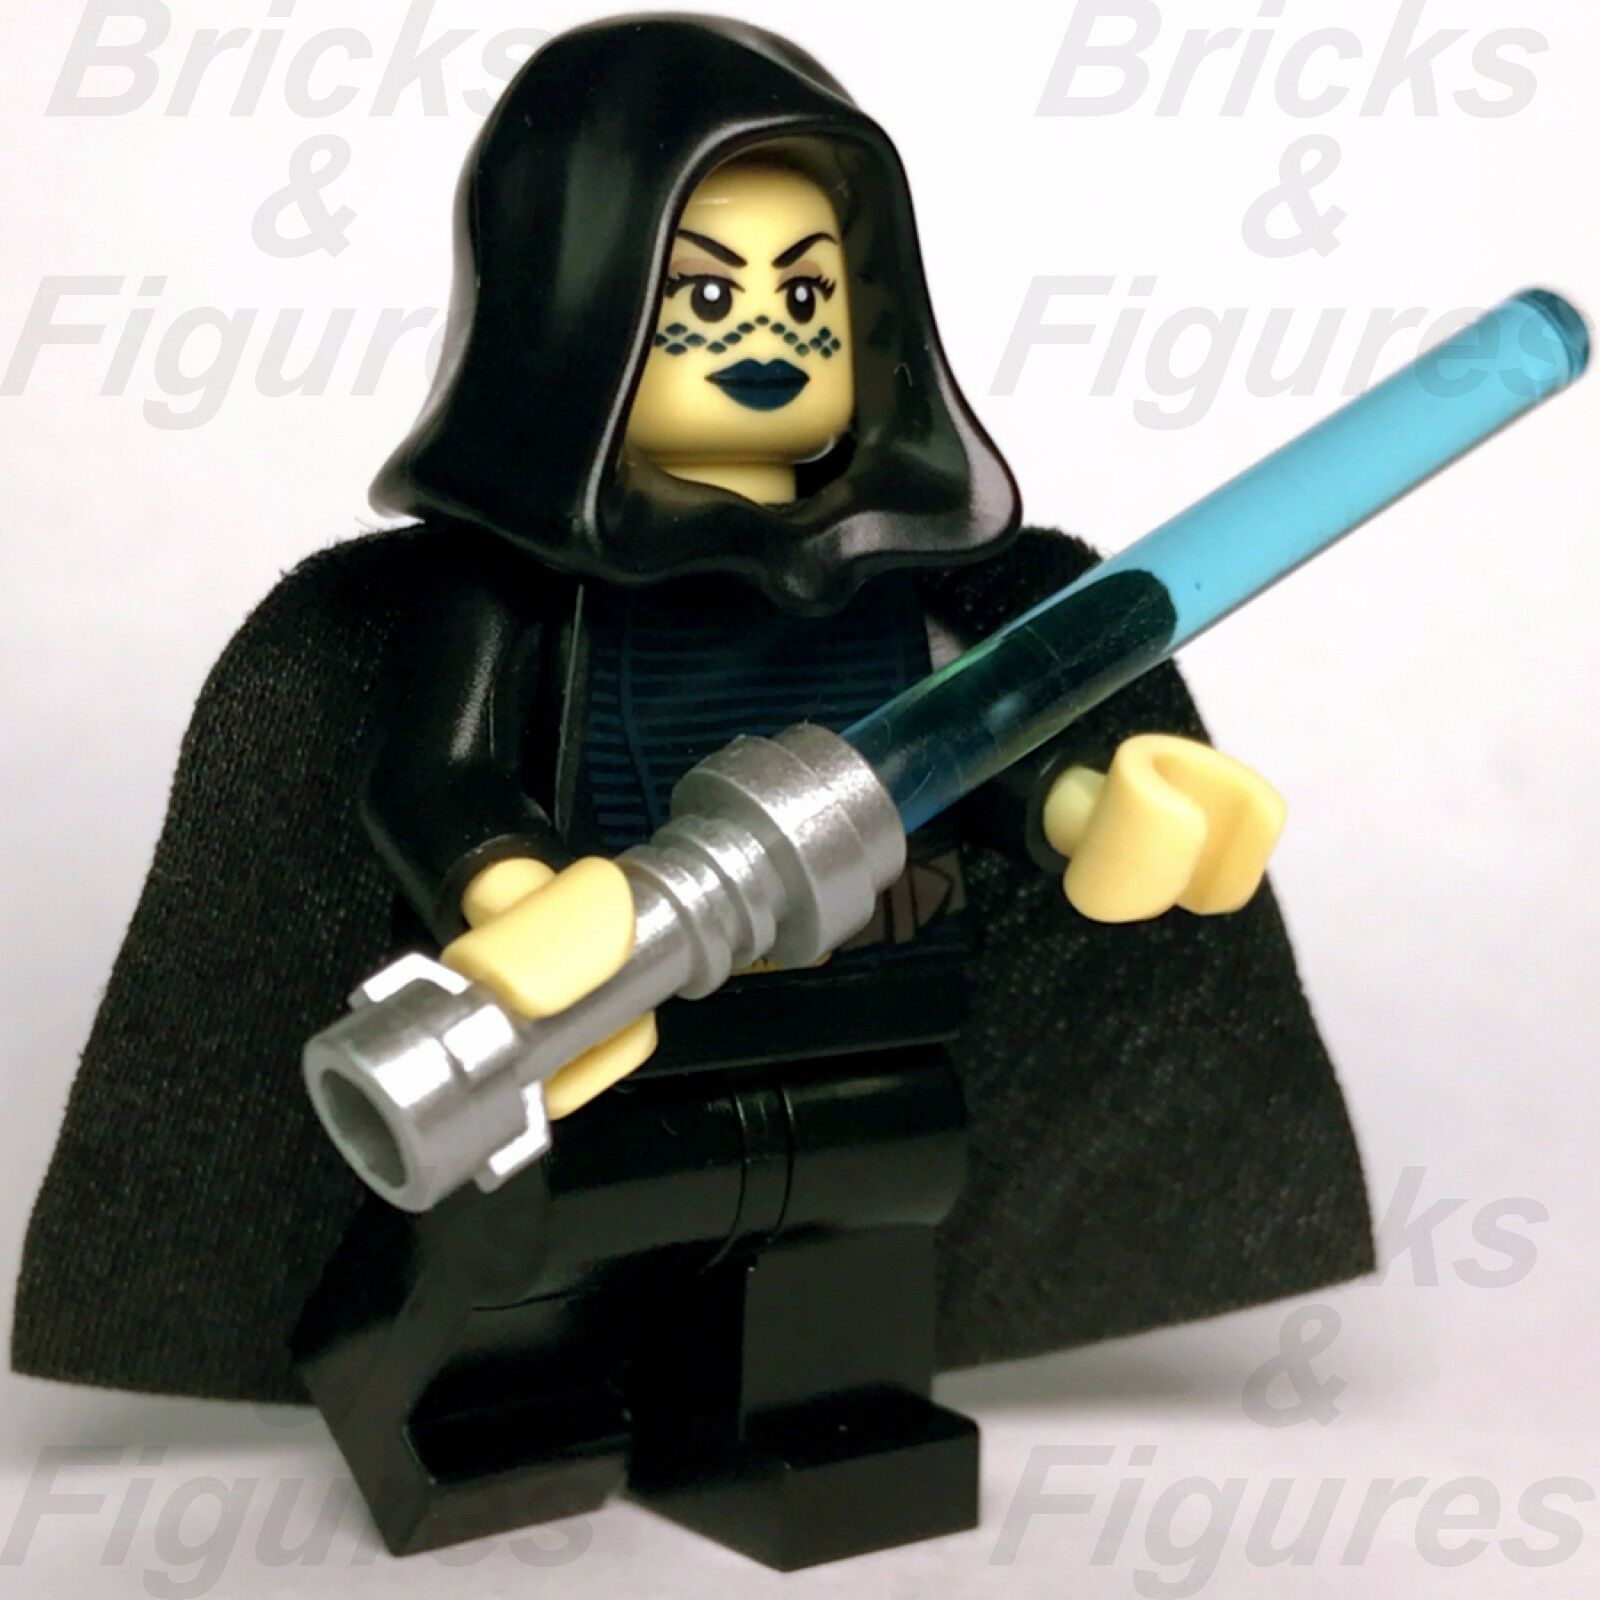 New Star Wars LEGO Barriss Offee Jedi Knight Padawan Minifigure 8091 - Bricks & Figures